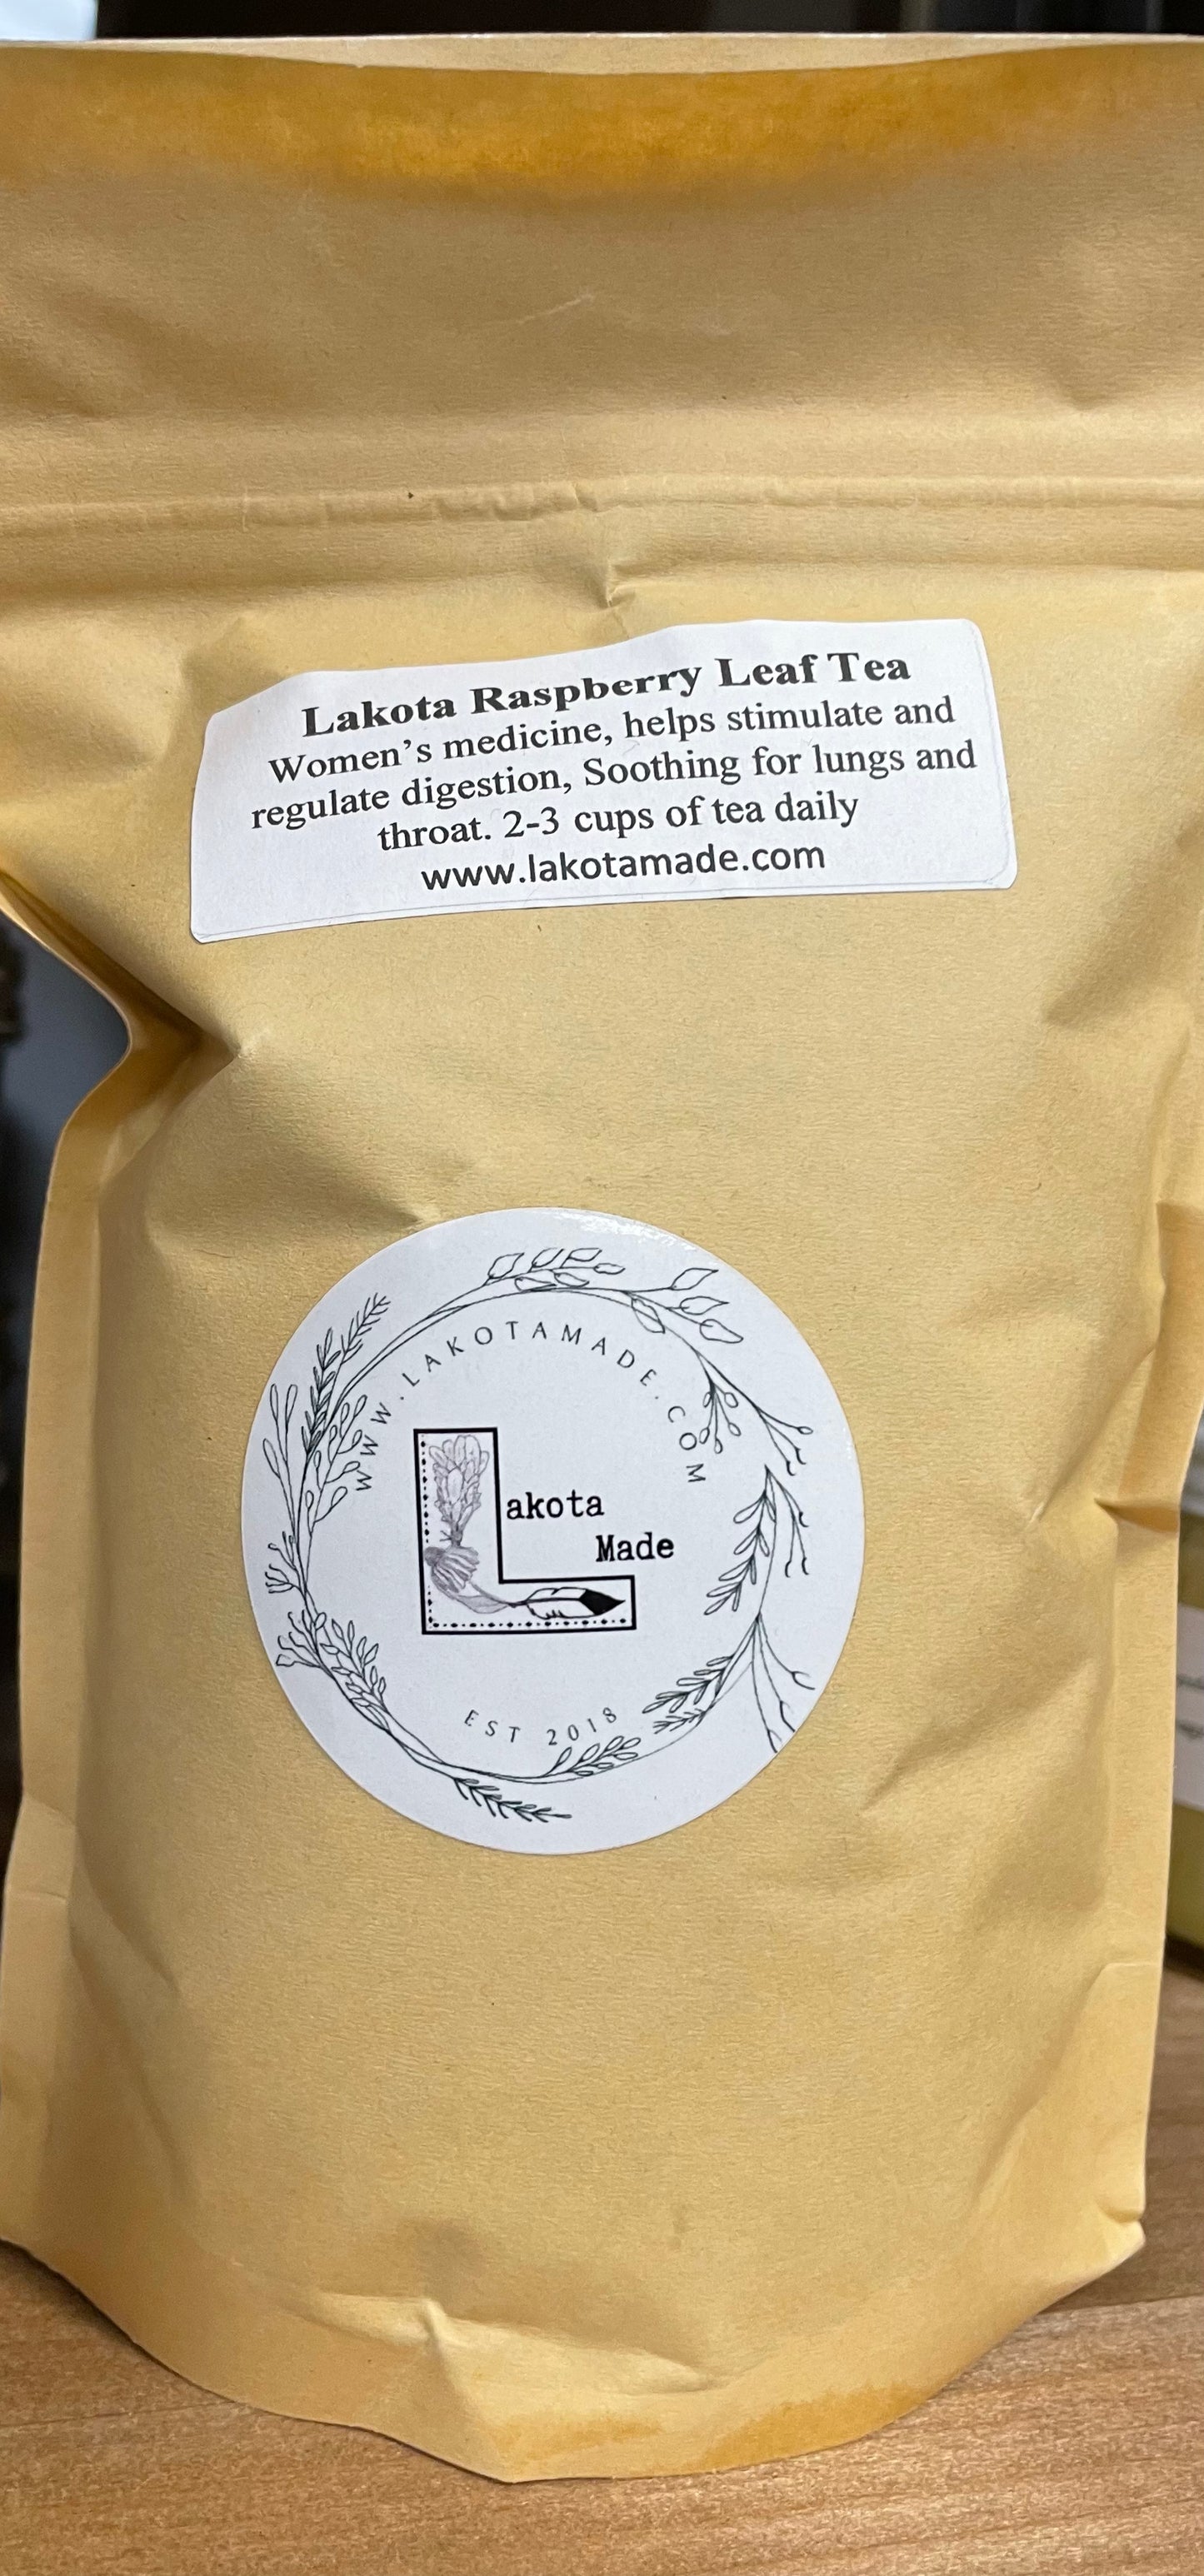 Lakota Raspberry Leaf Tea